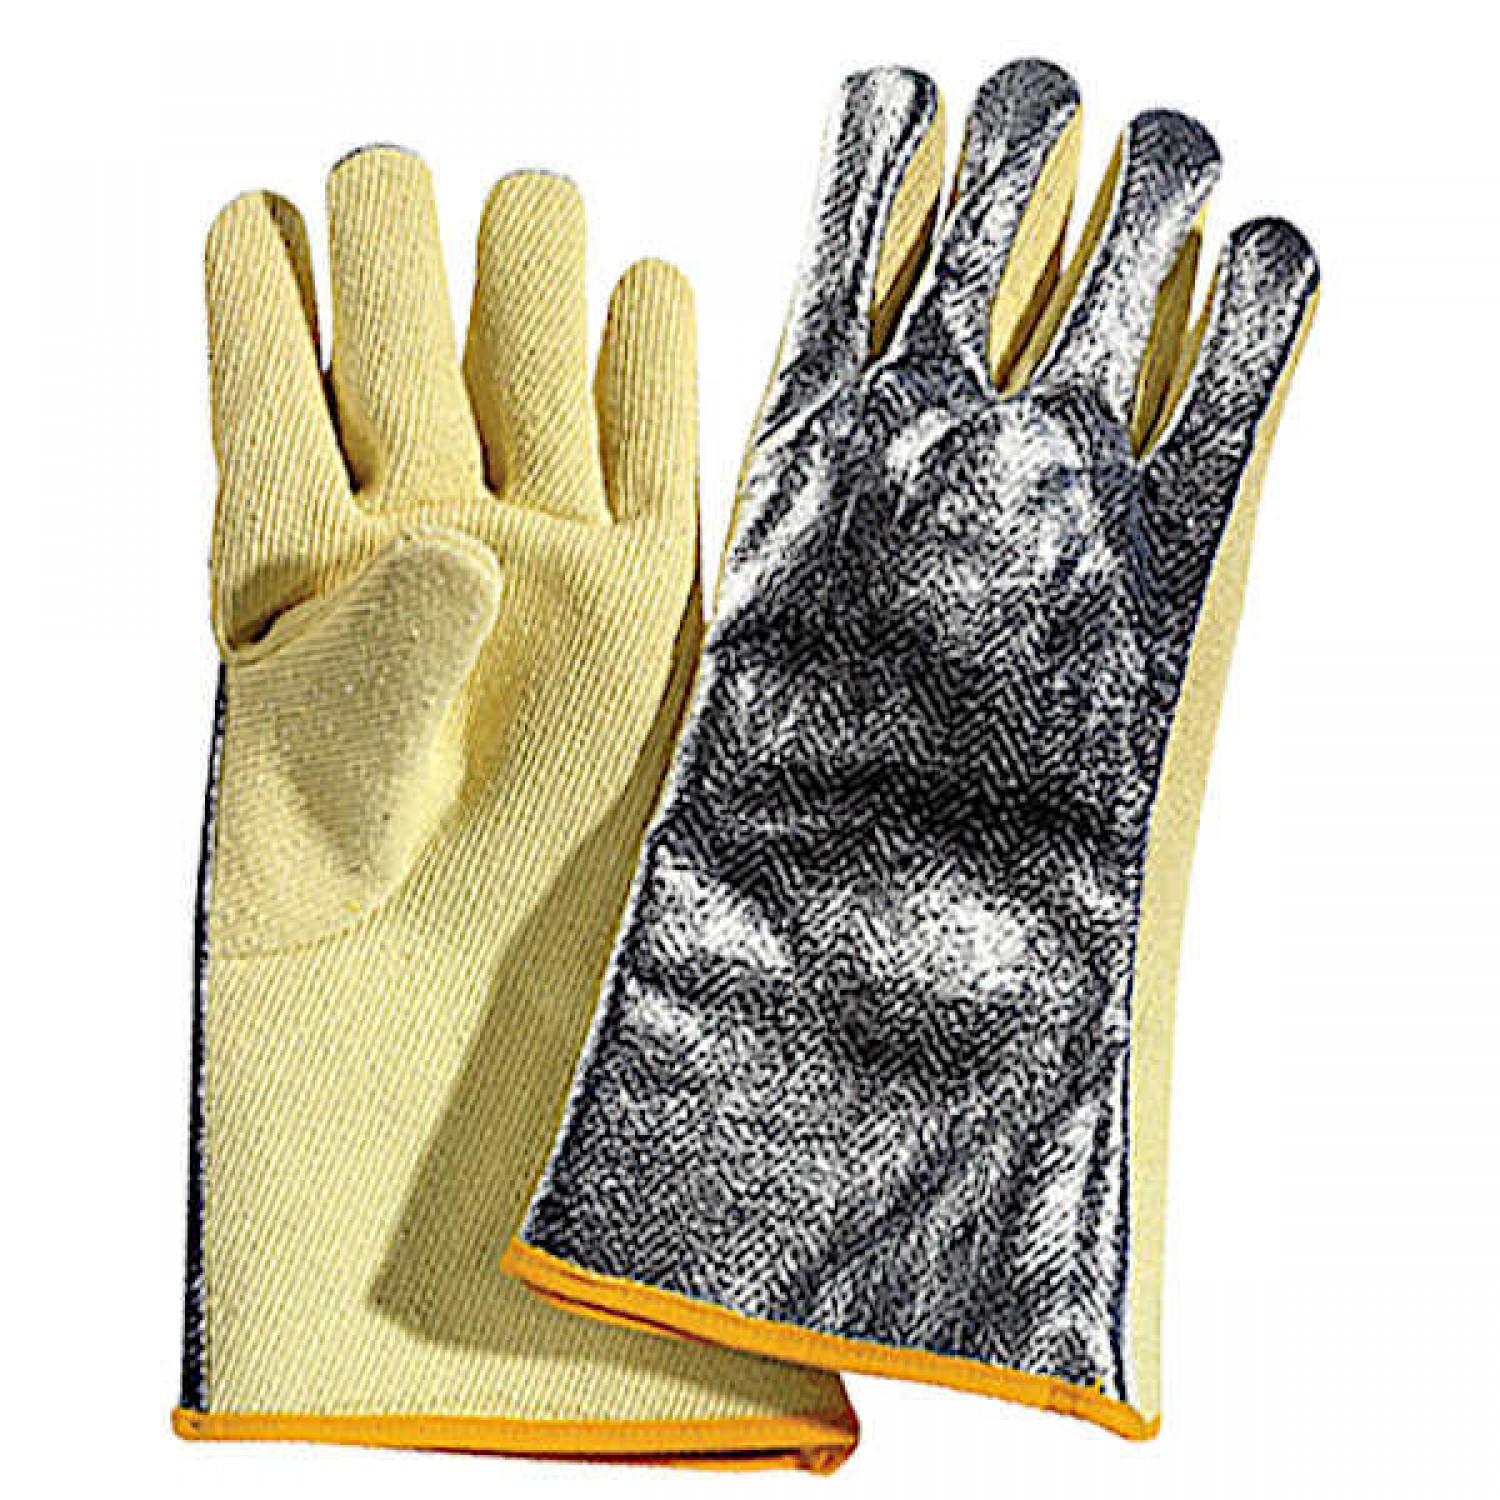 Aluminum-Aramid Heat-Resistant Gloves up to 250°C 38cm